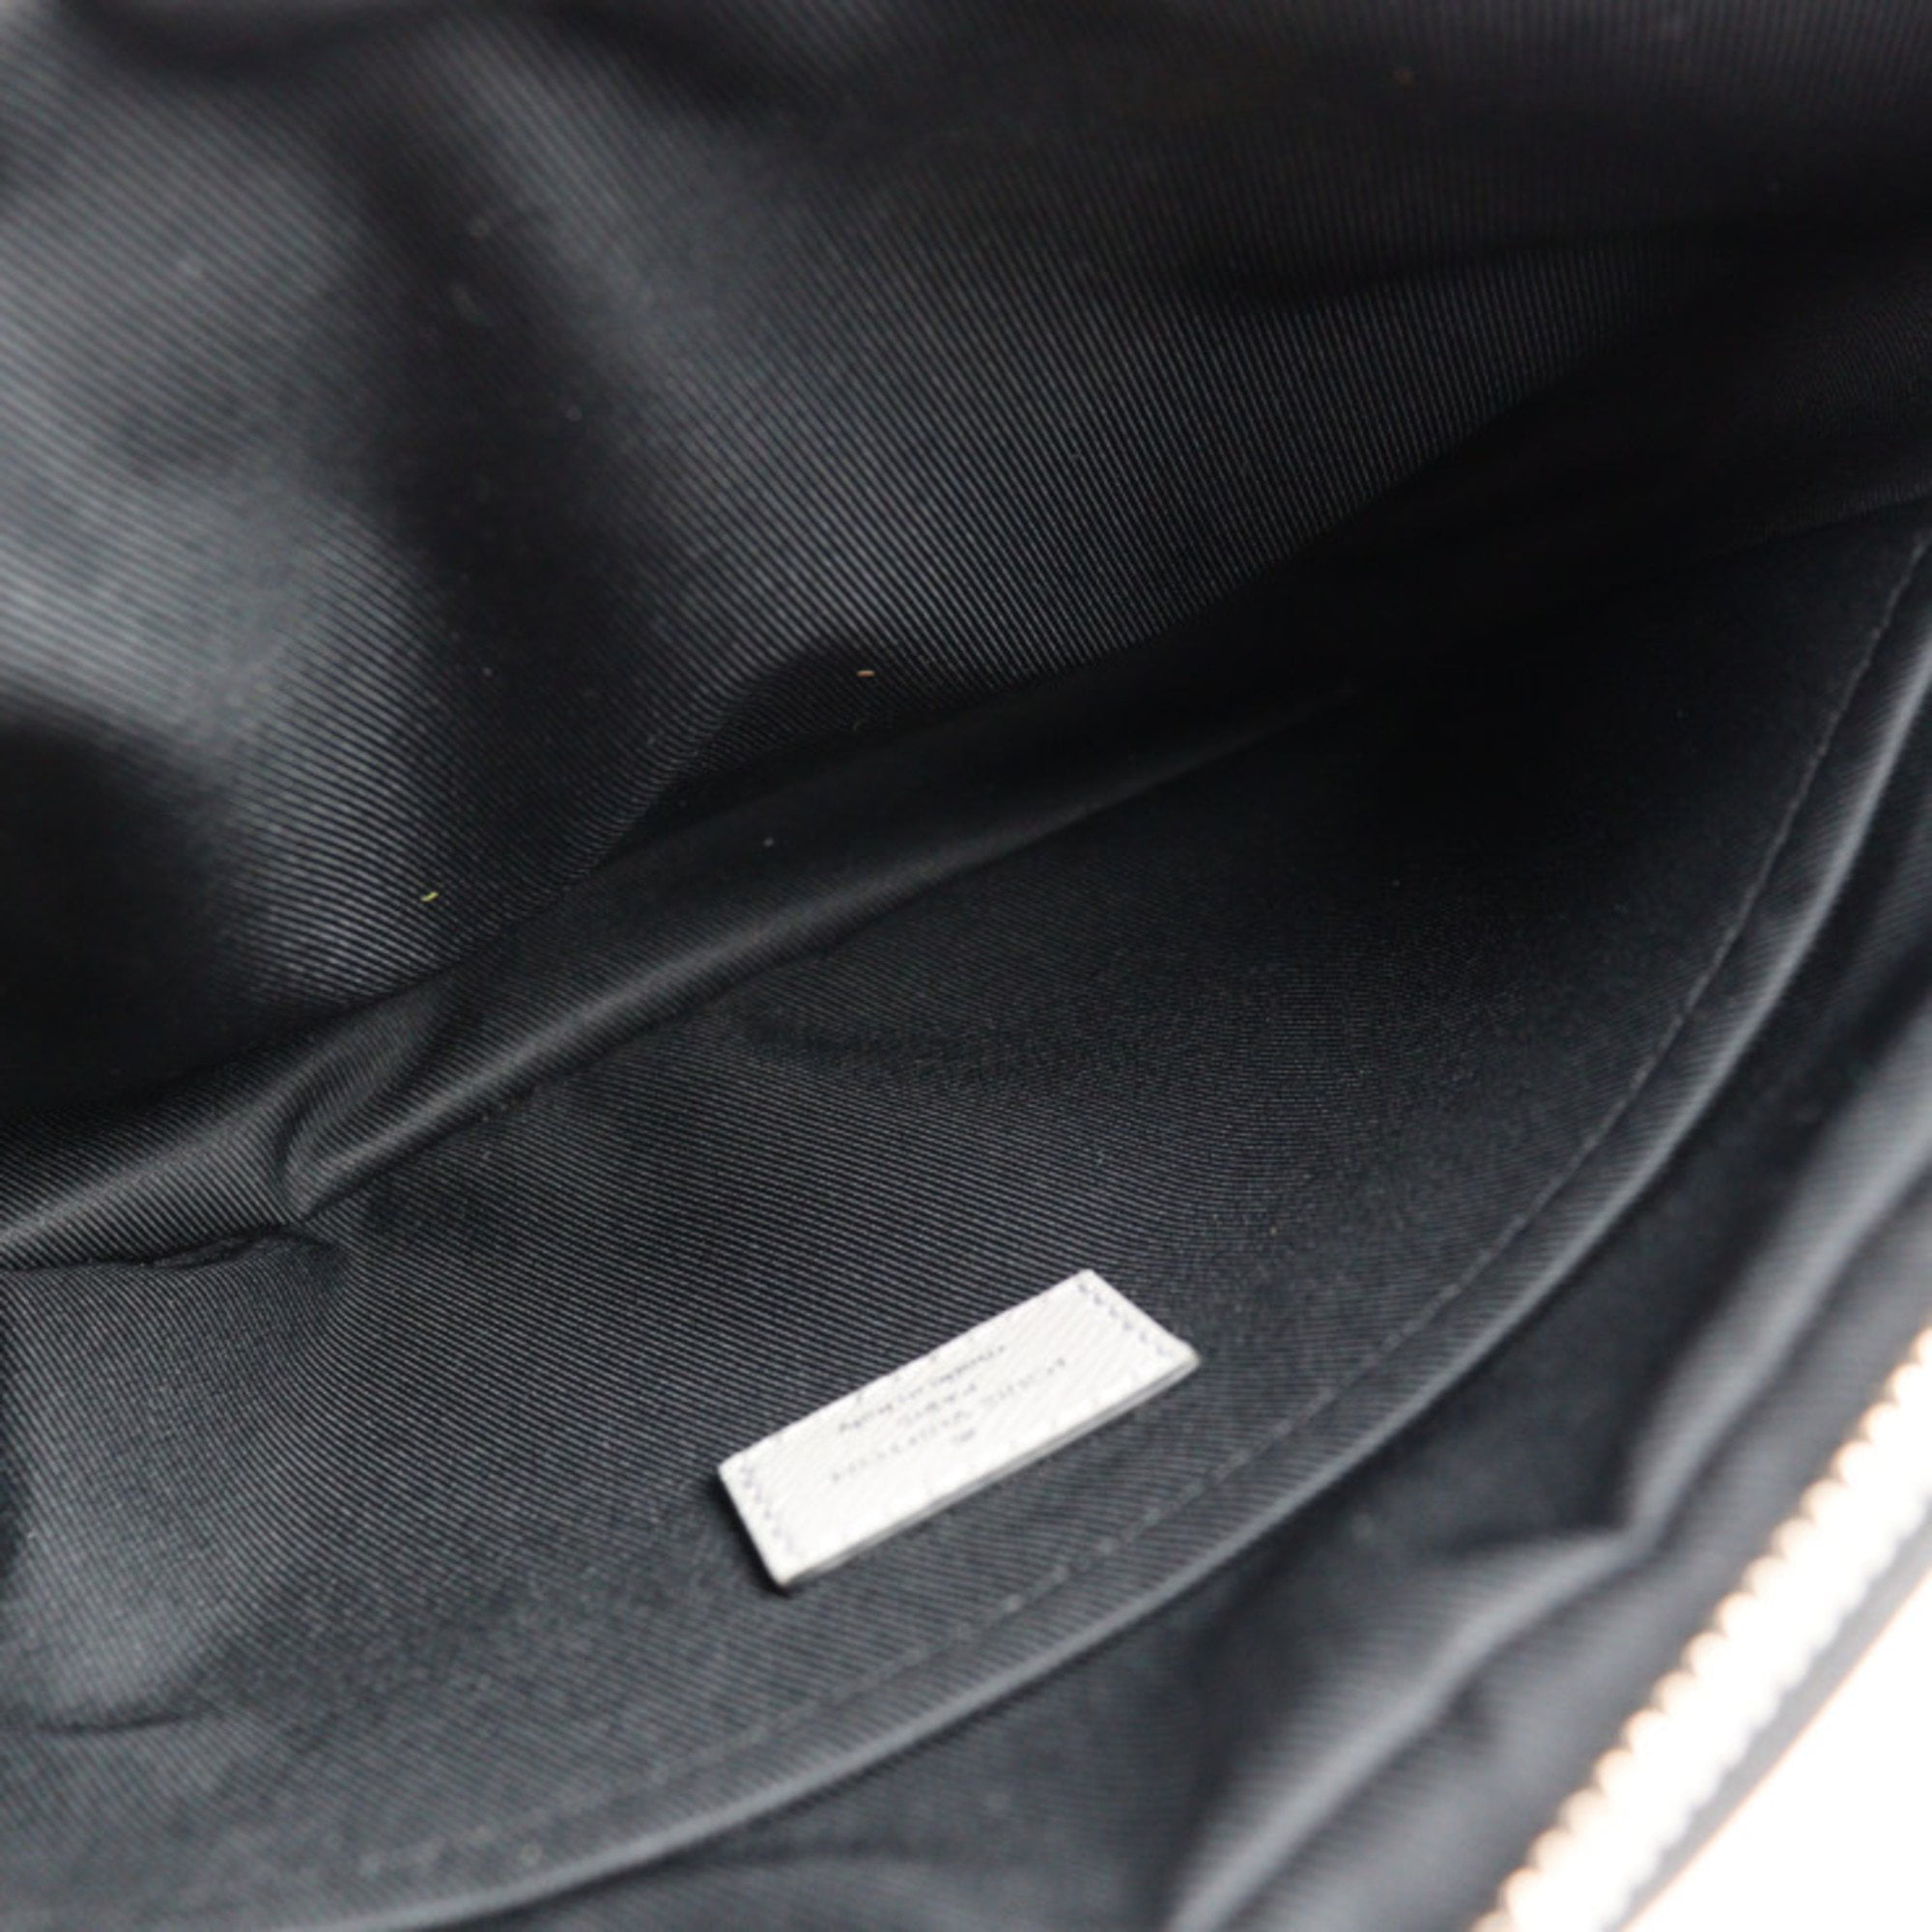 Louis Vuitton Outdoor Messenger Pm M30233 100% Authentic Black